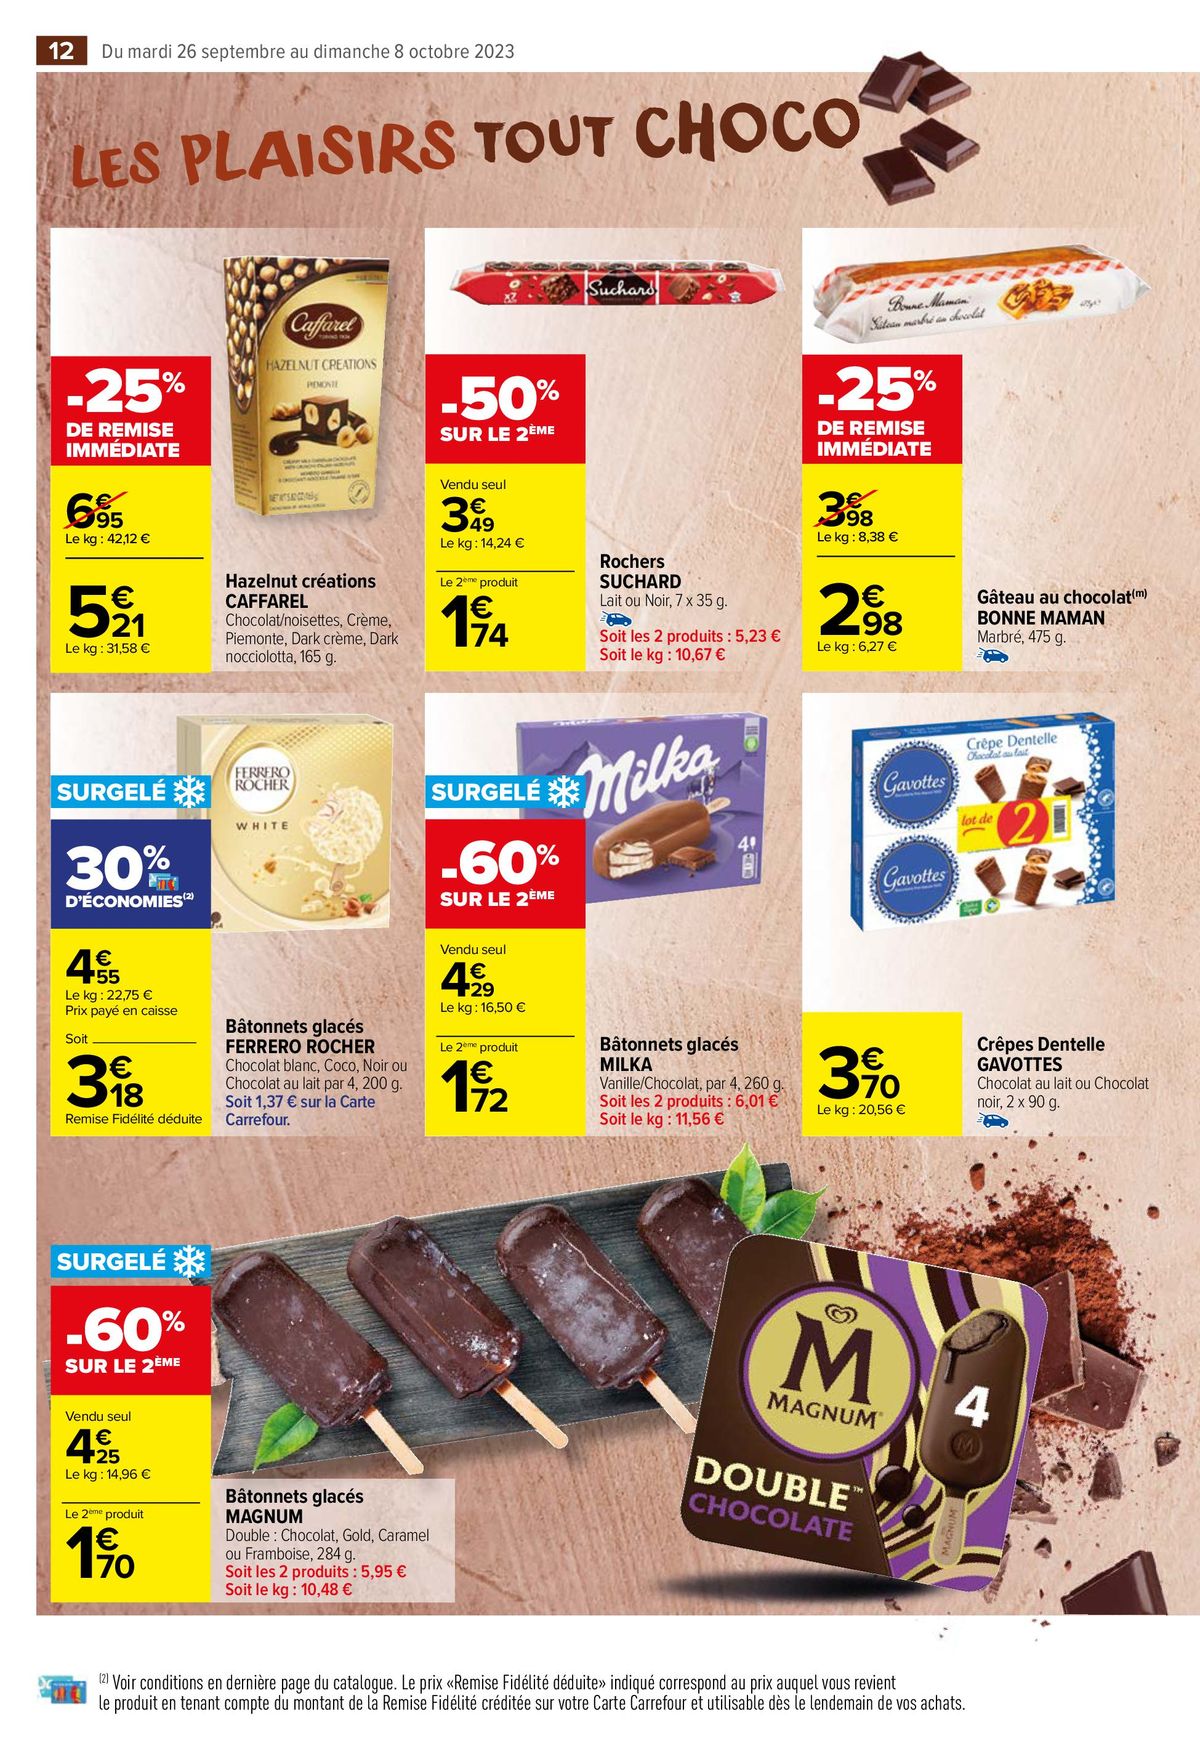 Catalogue Tout chocolat, page 00014